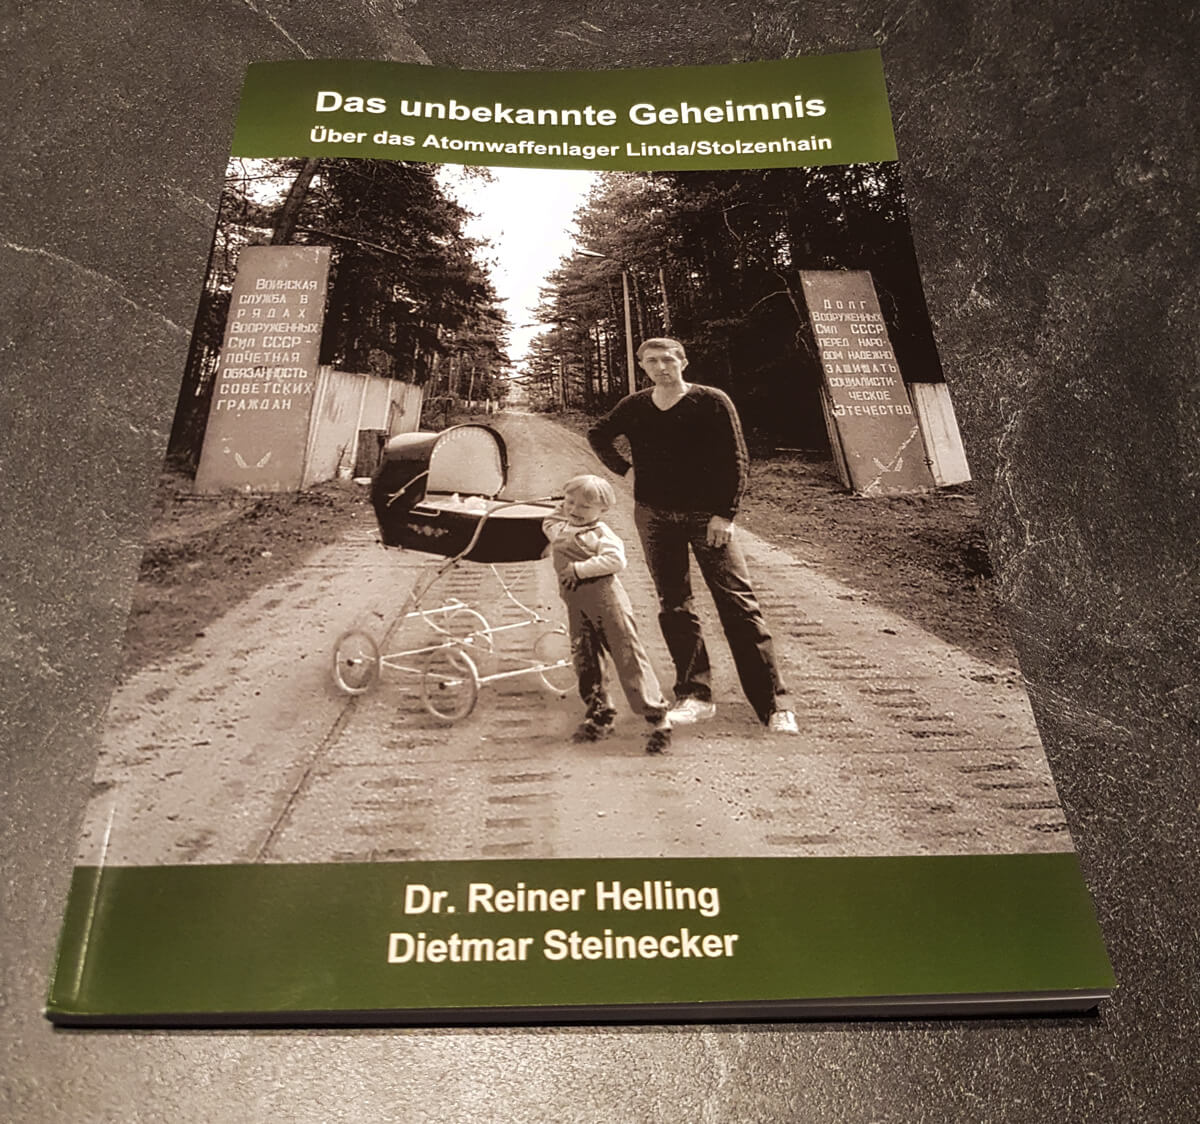 Buch/Broschüre Atomwaffenlager Linda/Stolzenhain von Dr. Reiner Helling und Dietmar Steinecker